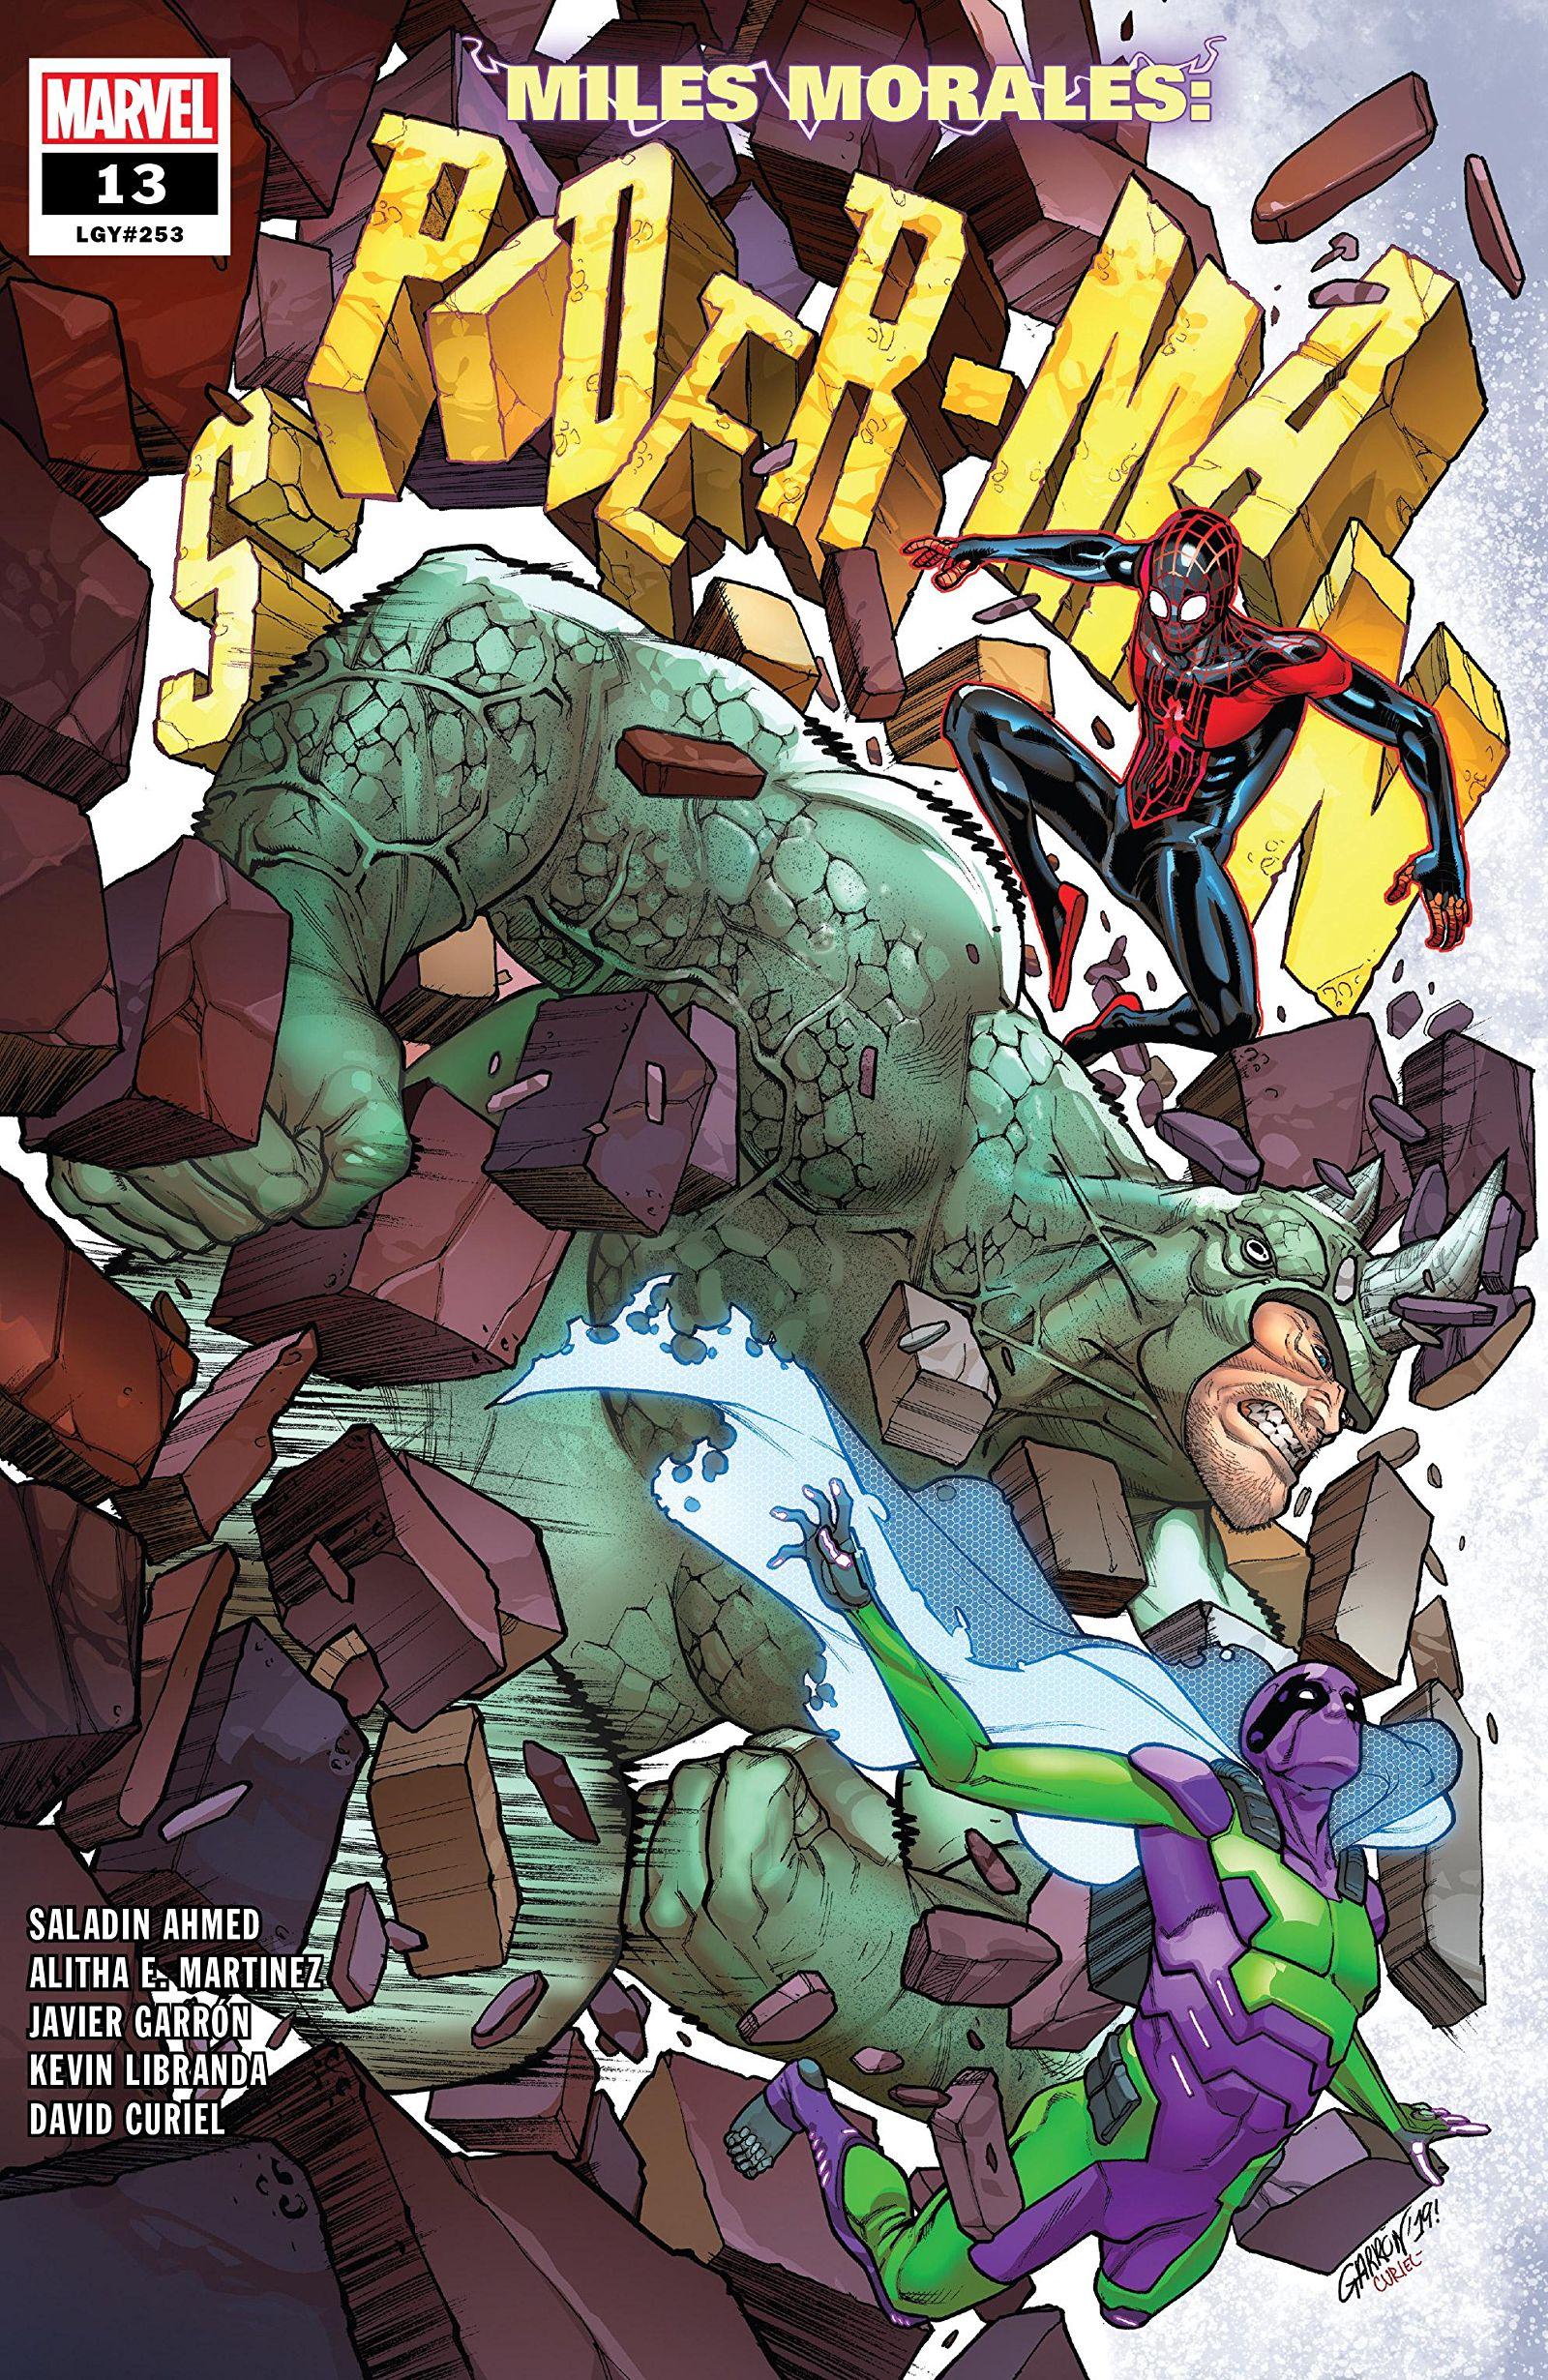 Miles Morales: Spider-Man Vol. 1 #13